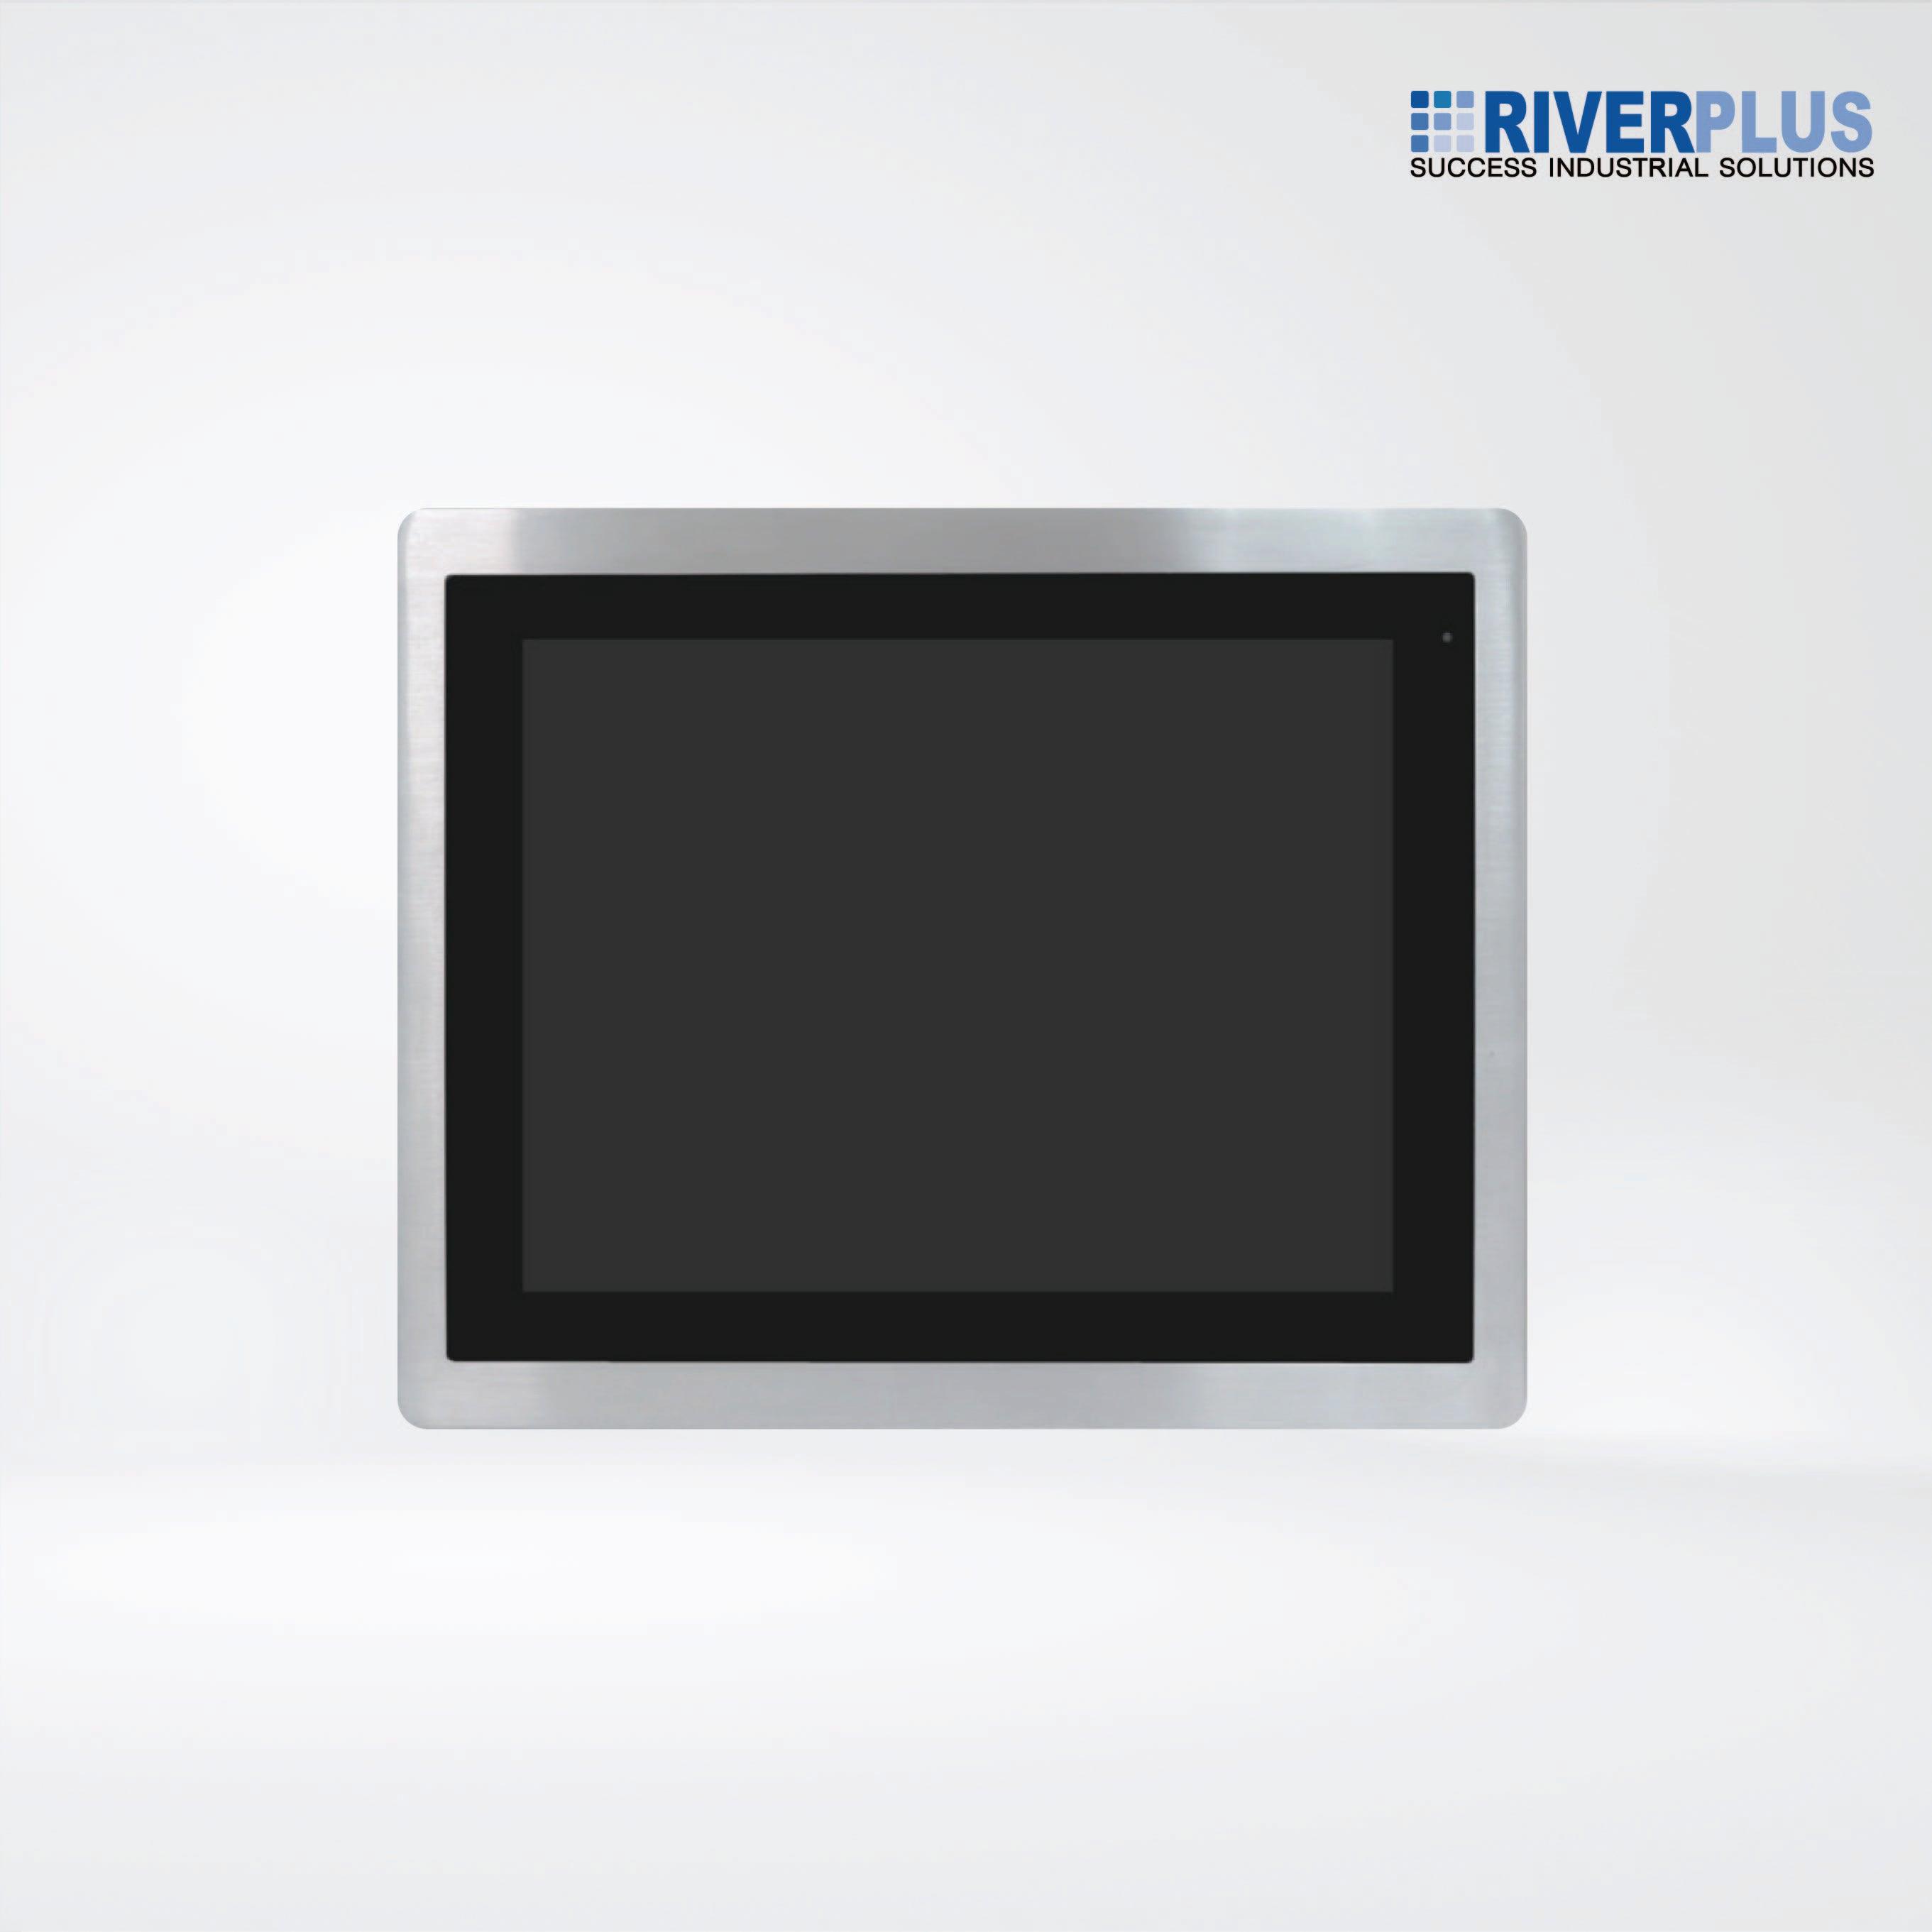 ViTAM-112R 12.1″ New Gen. IP66/IP69K Stainless Steel Display - Riverplus